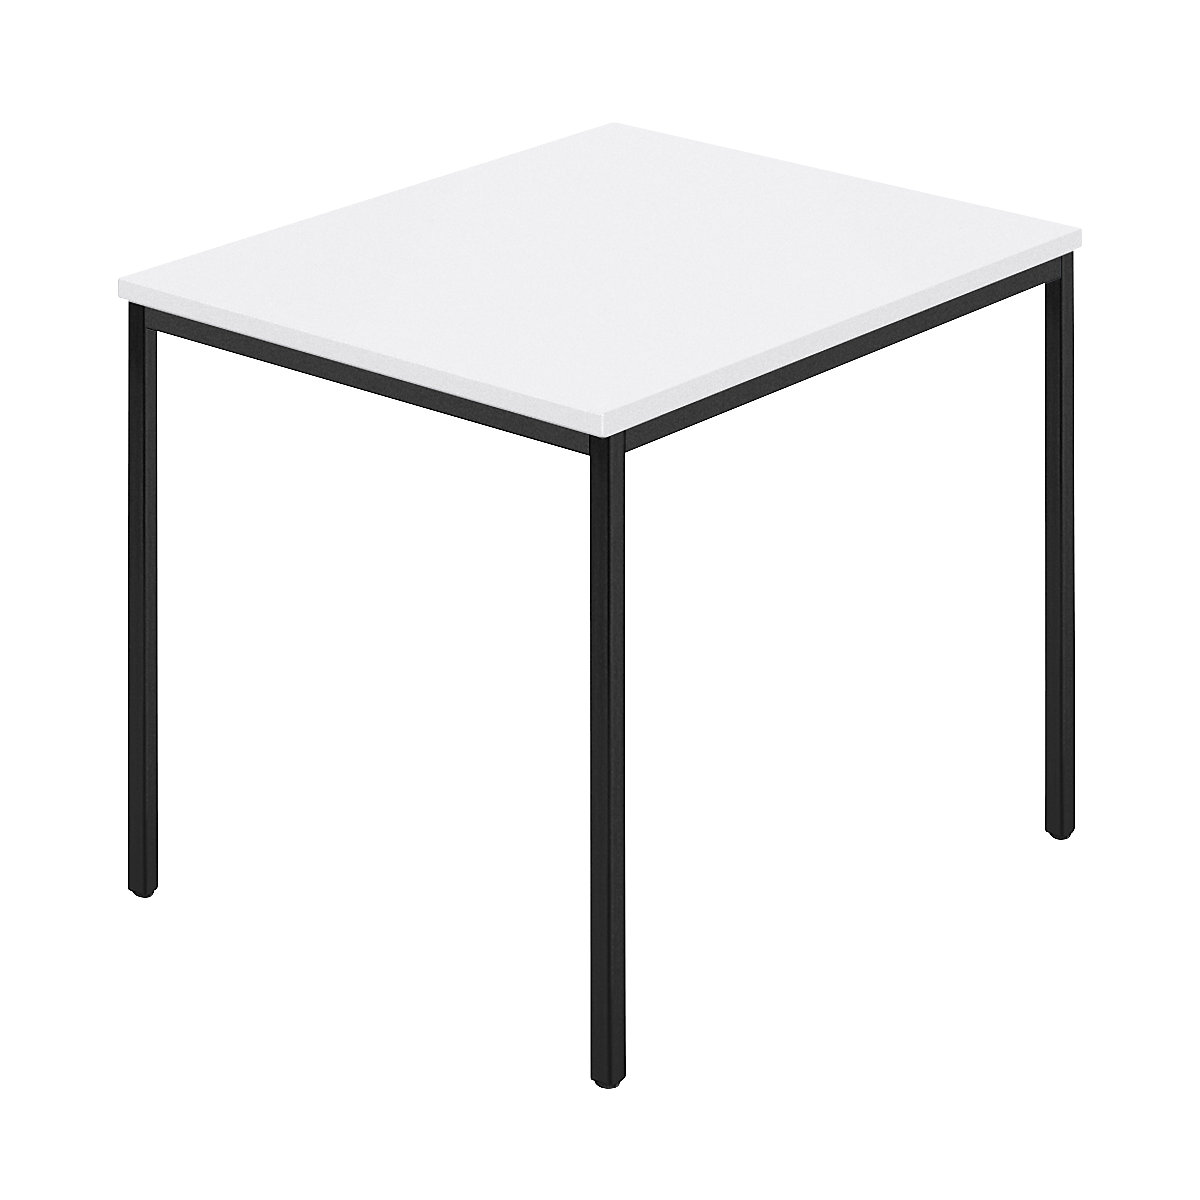 Rechthoekige tafel, vierkante buis met coating, b x d = 800 x 800 mm, wit / antraciet-8